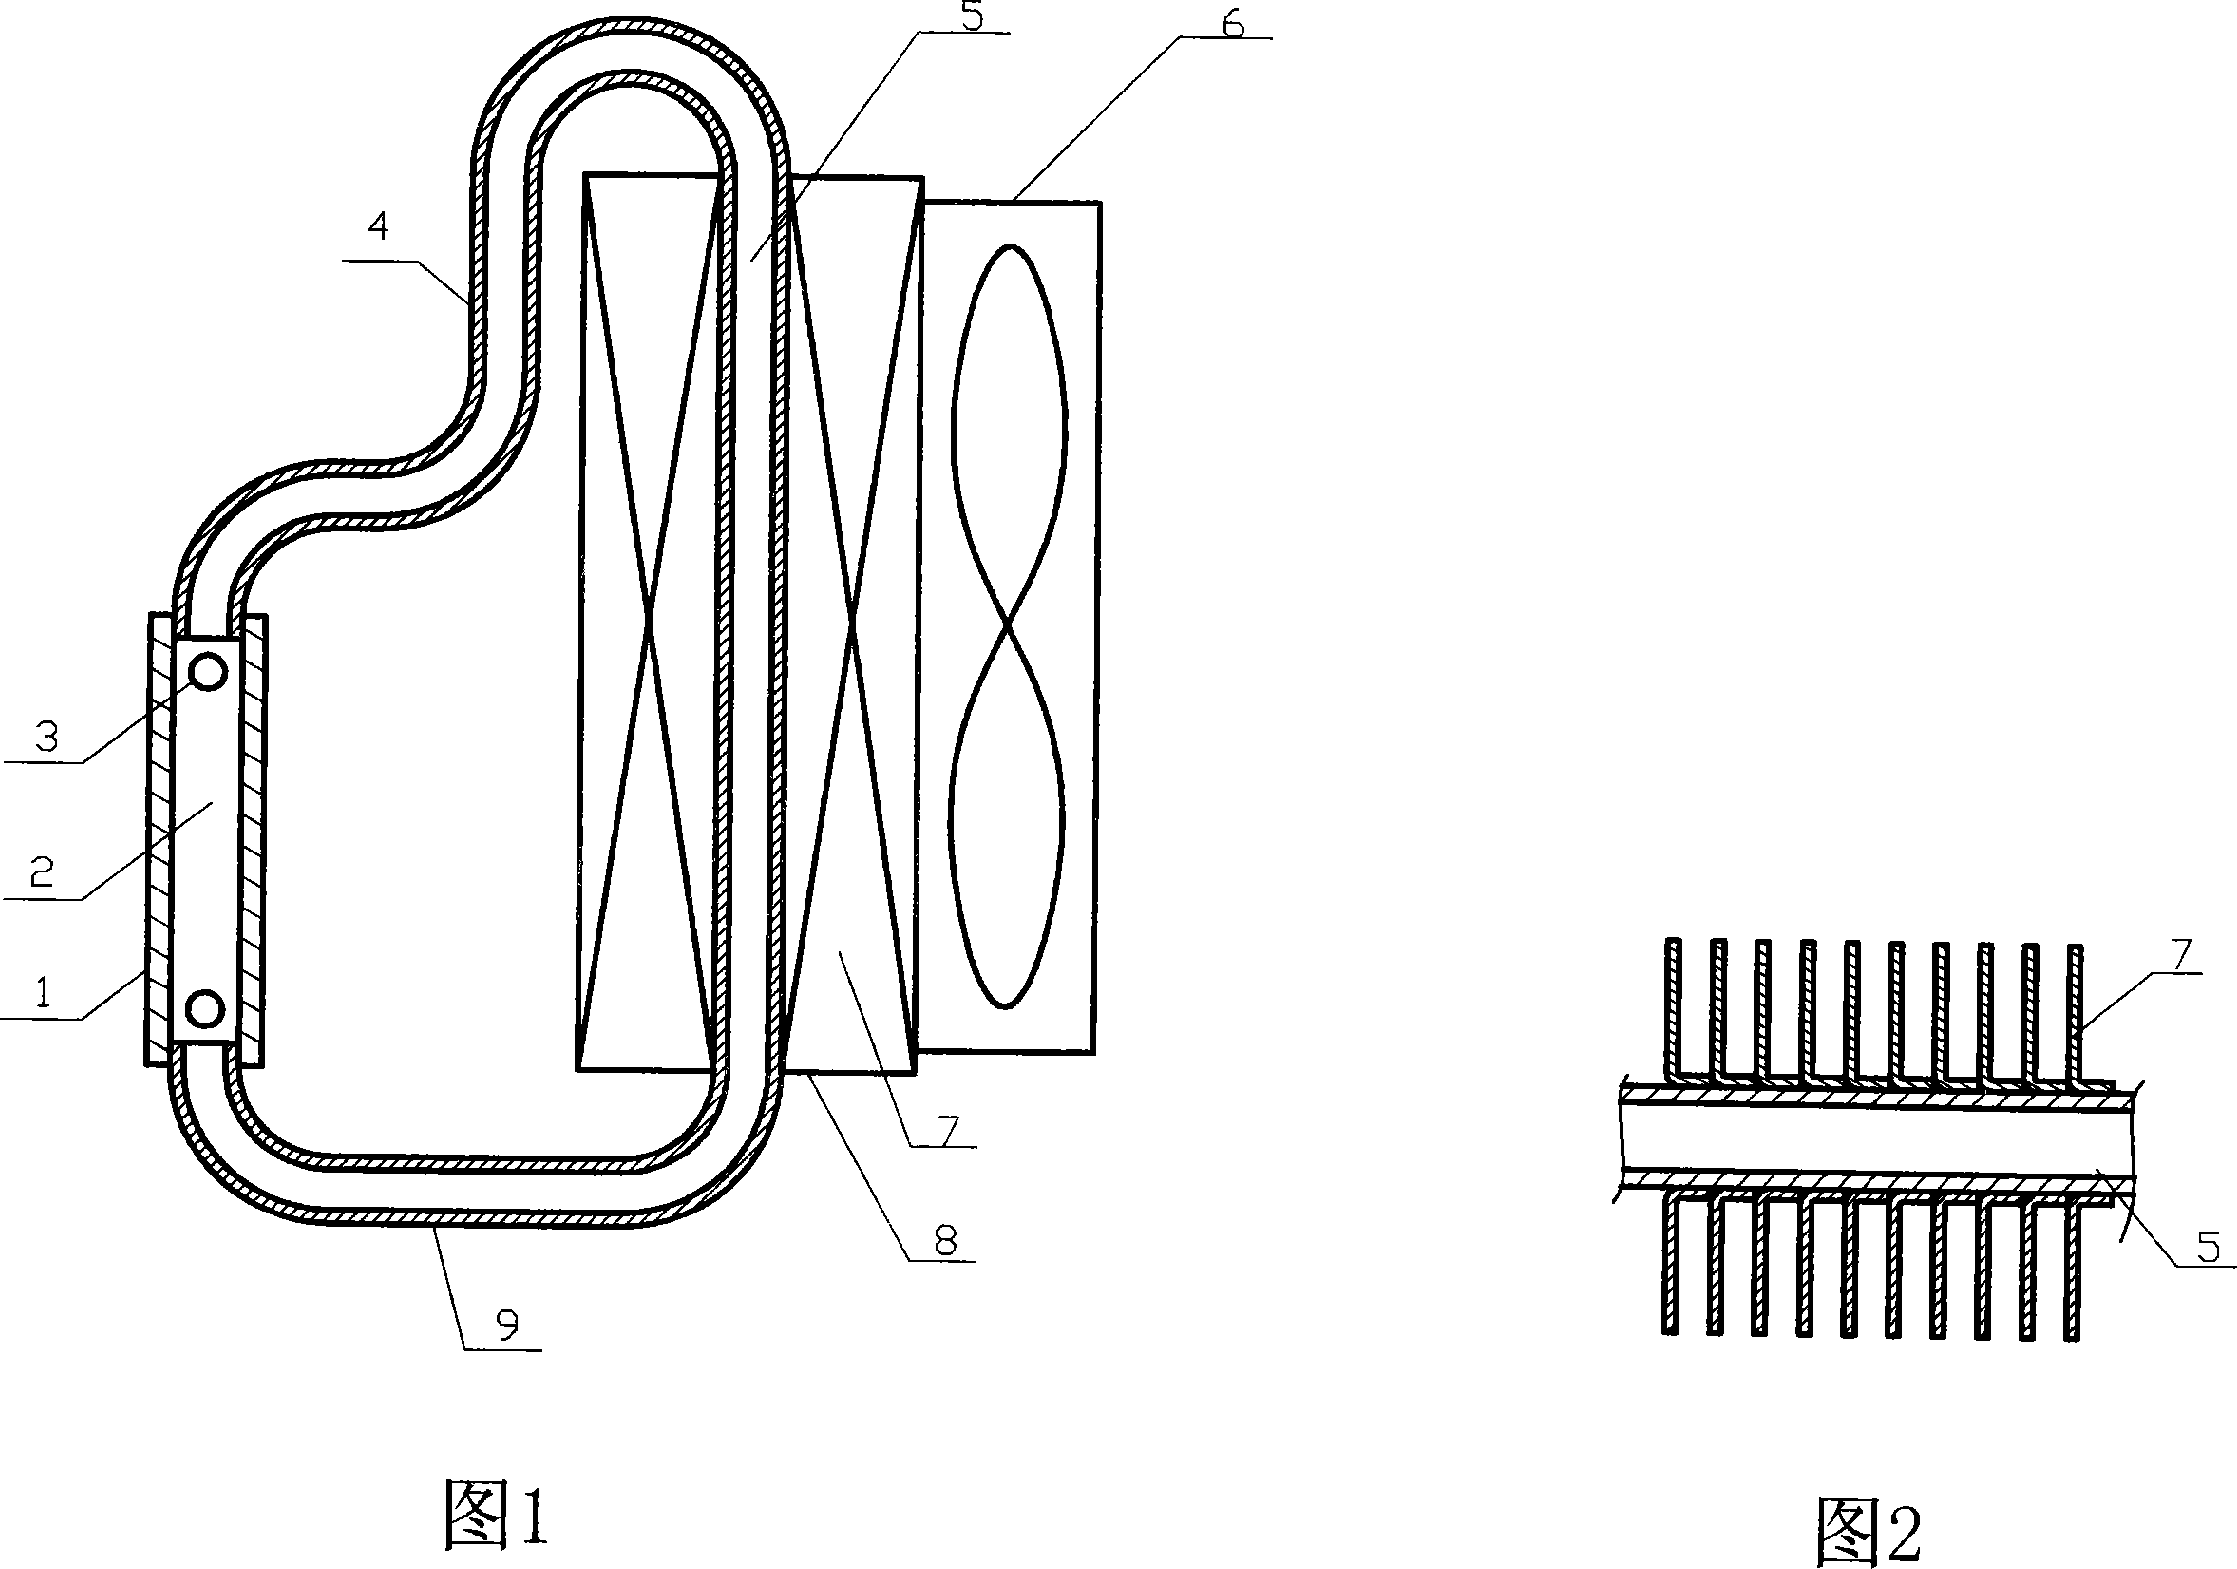 Circulating hot tube type radiator